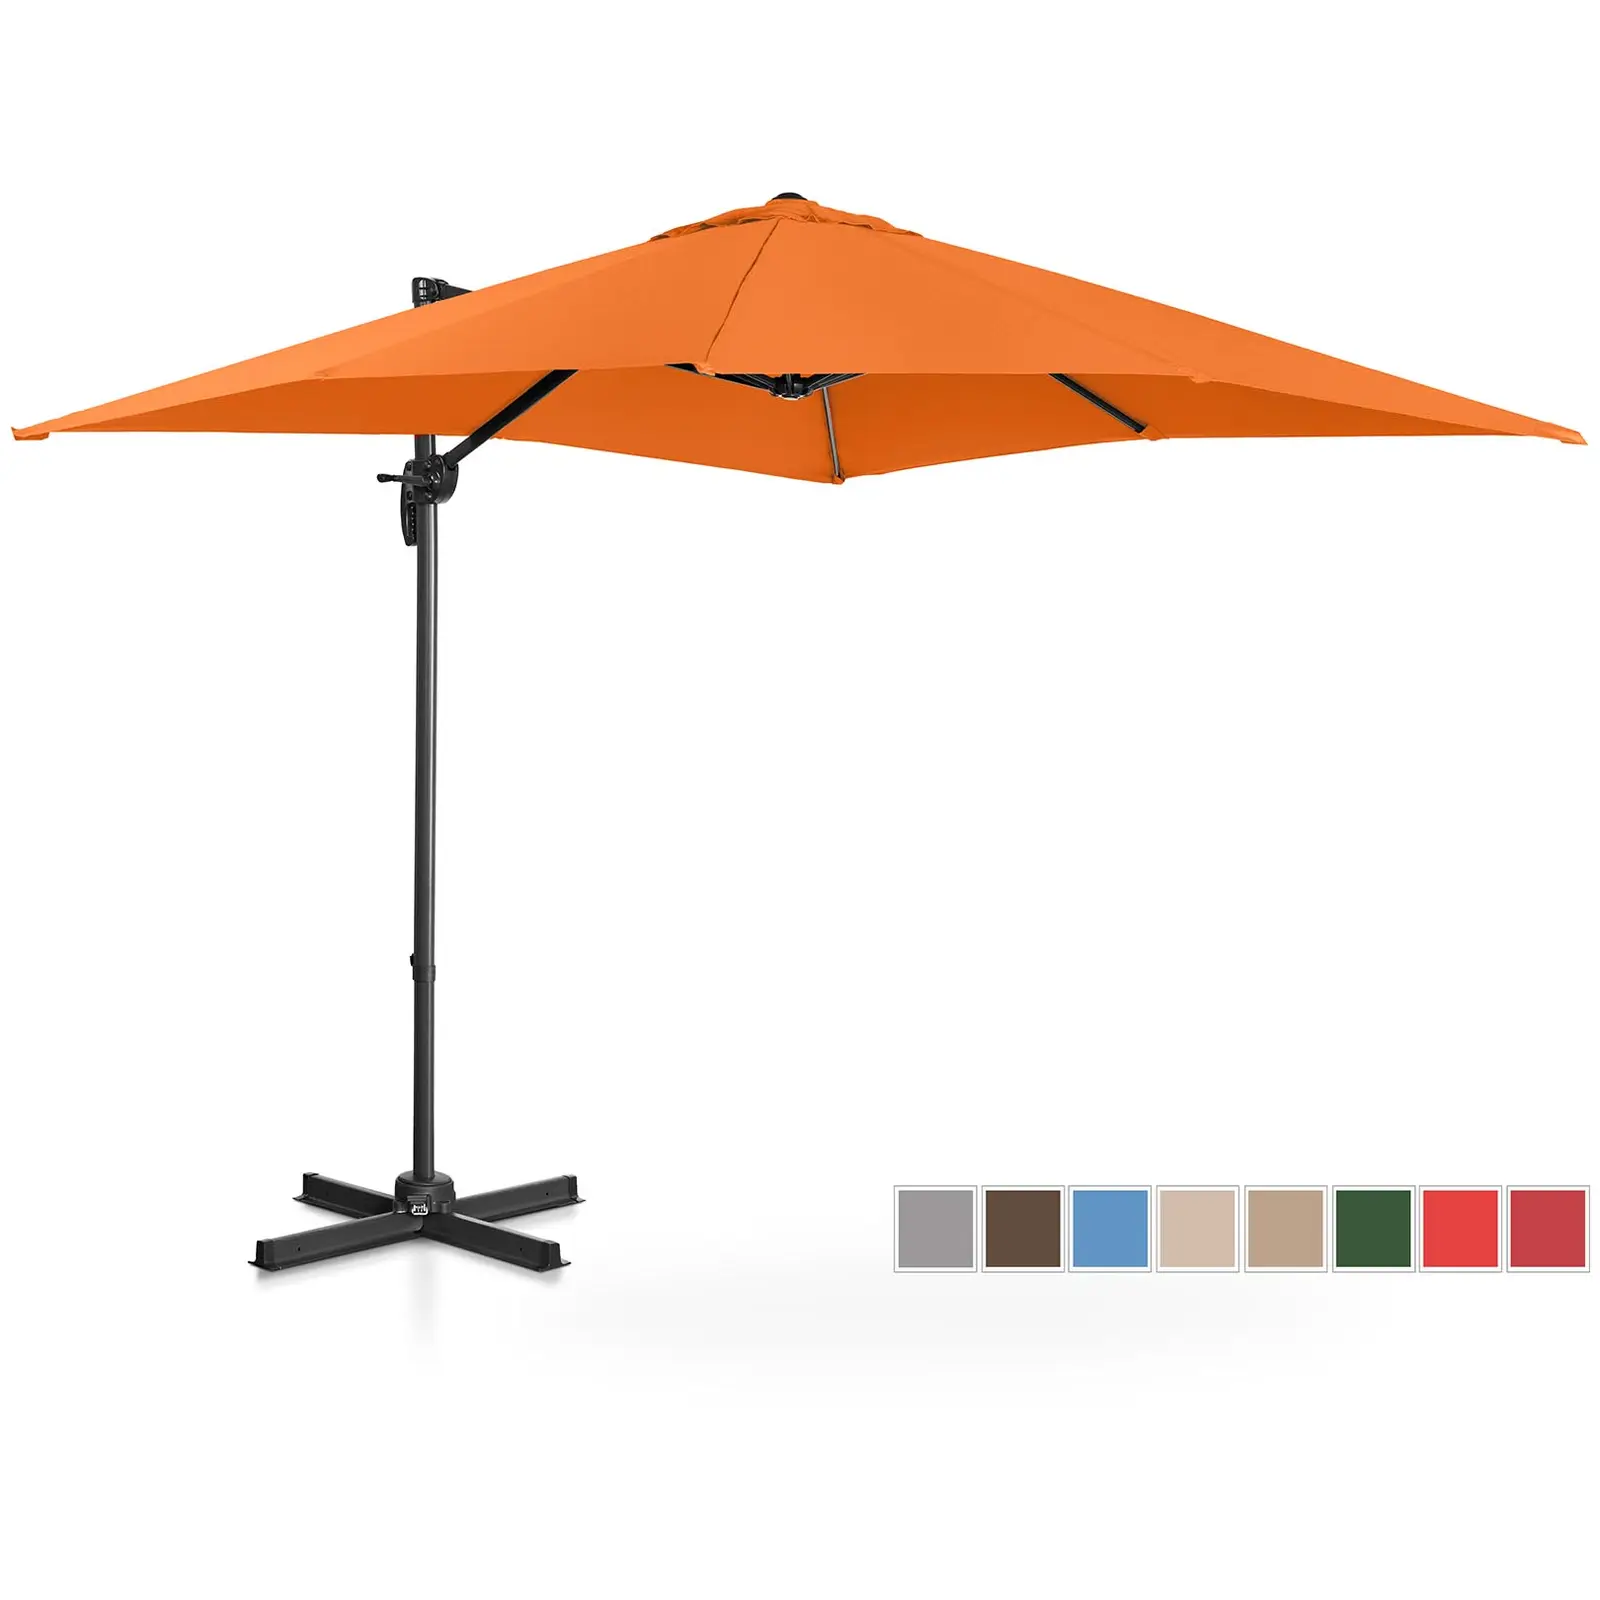 Parasol de jardin - Orange - Carré - 250 x 250 cm - Pivotant